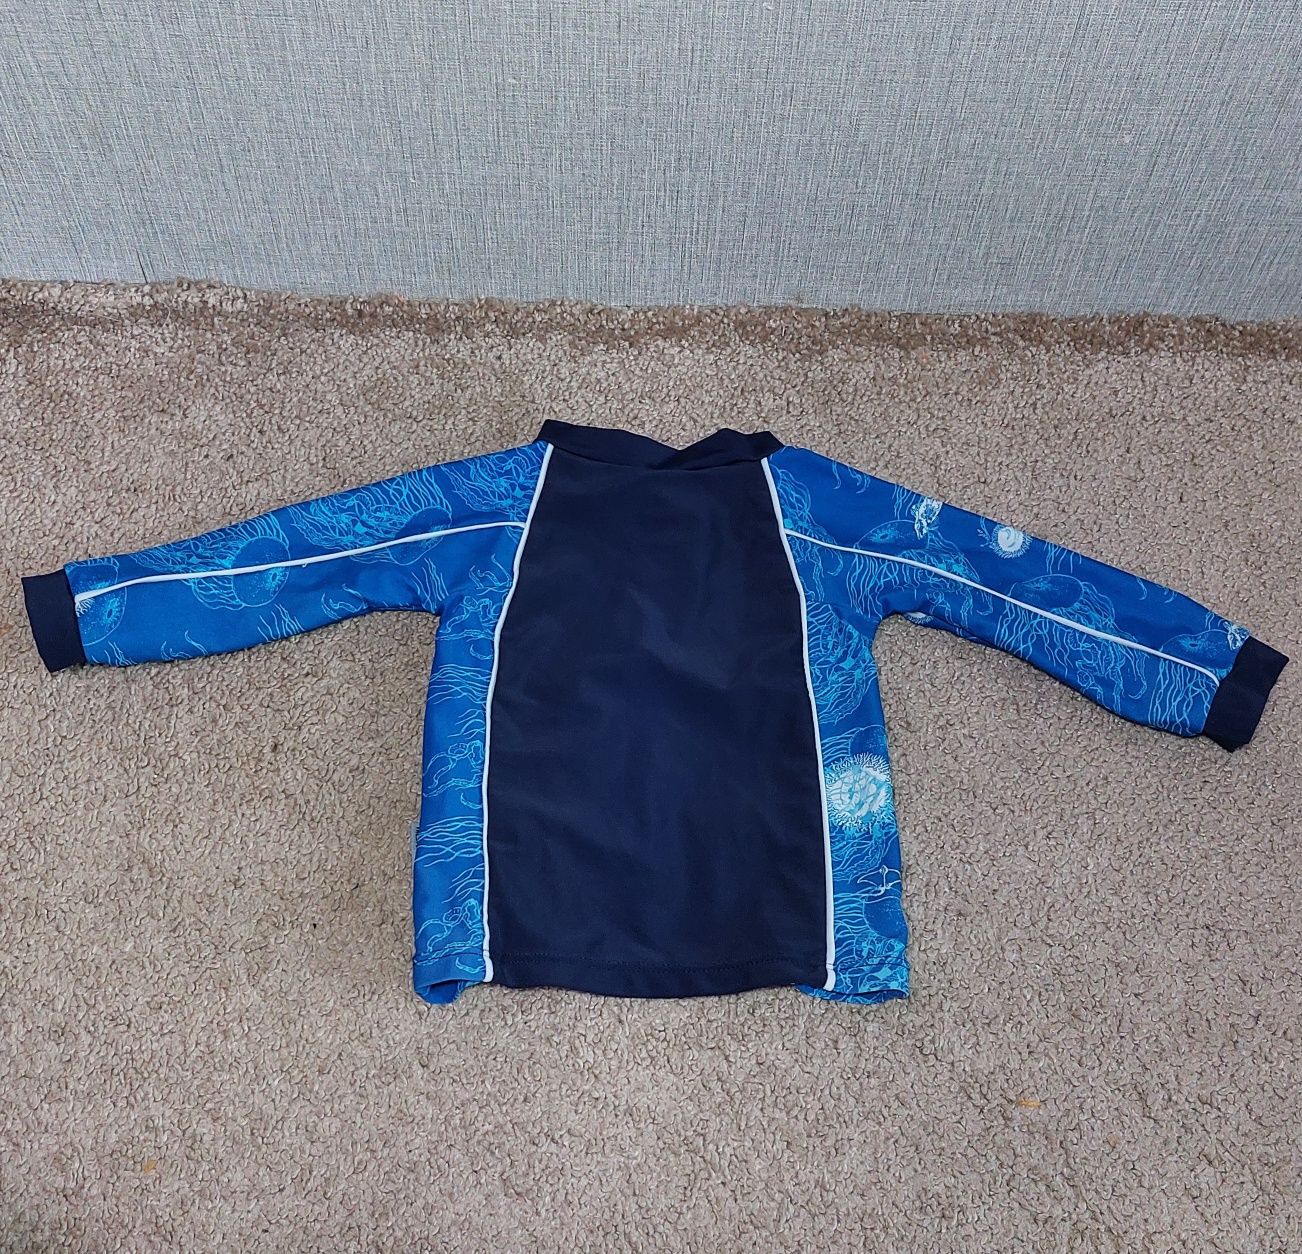 Купальник, купальный костюм на мальчика Trespass. 92-98 р., на 2-3года